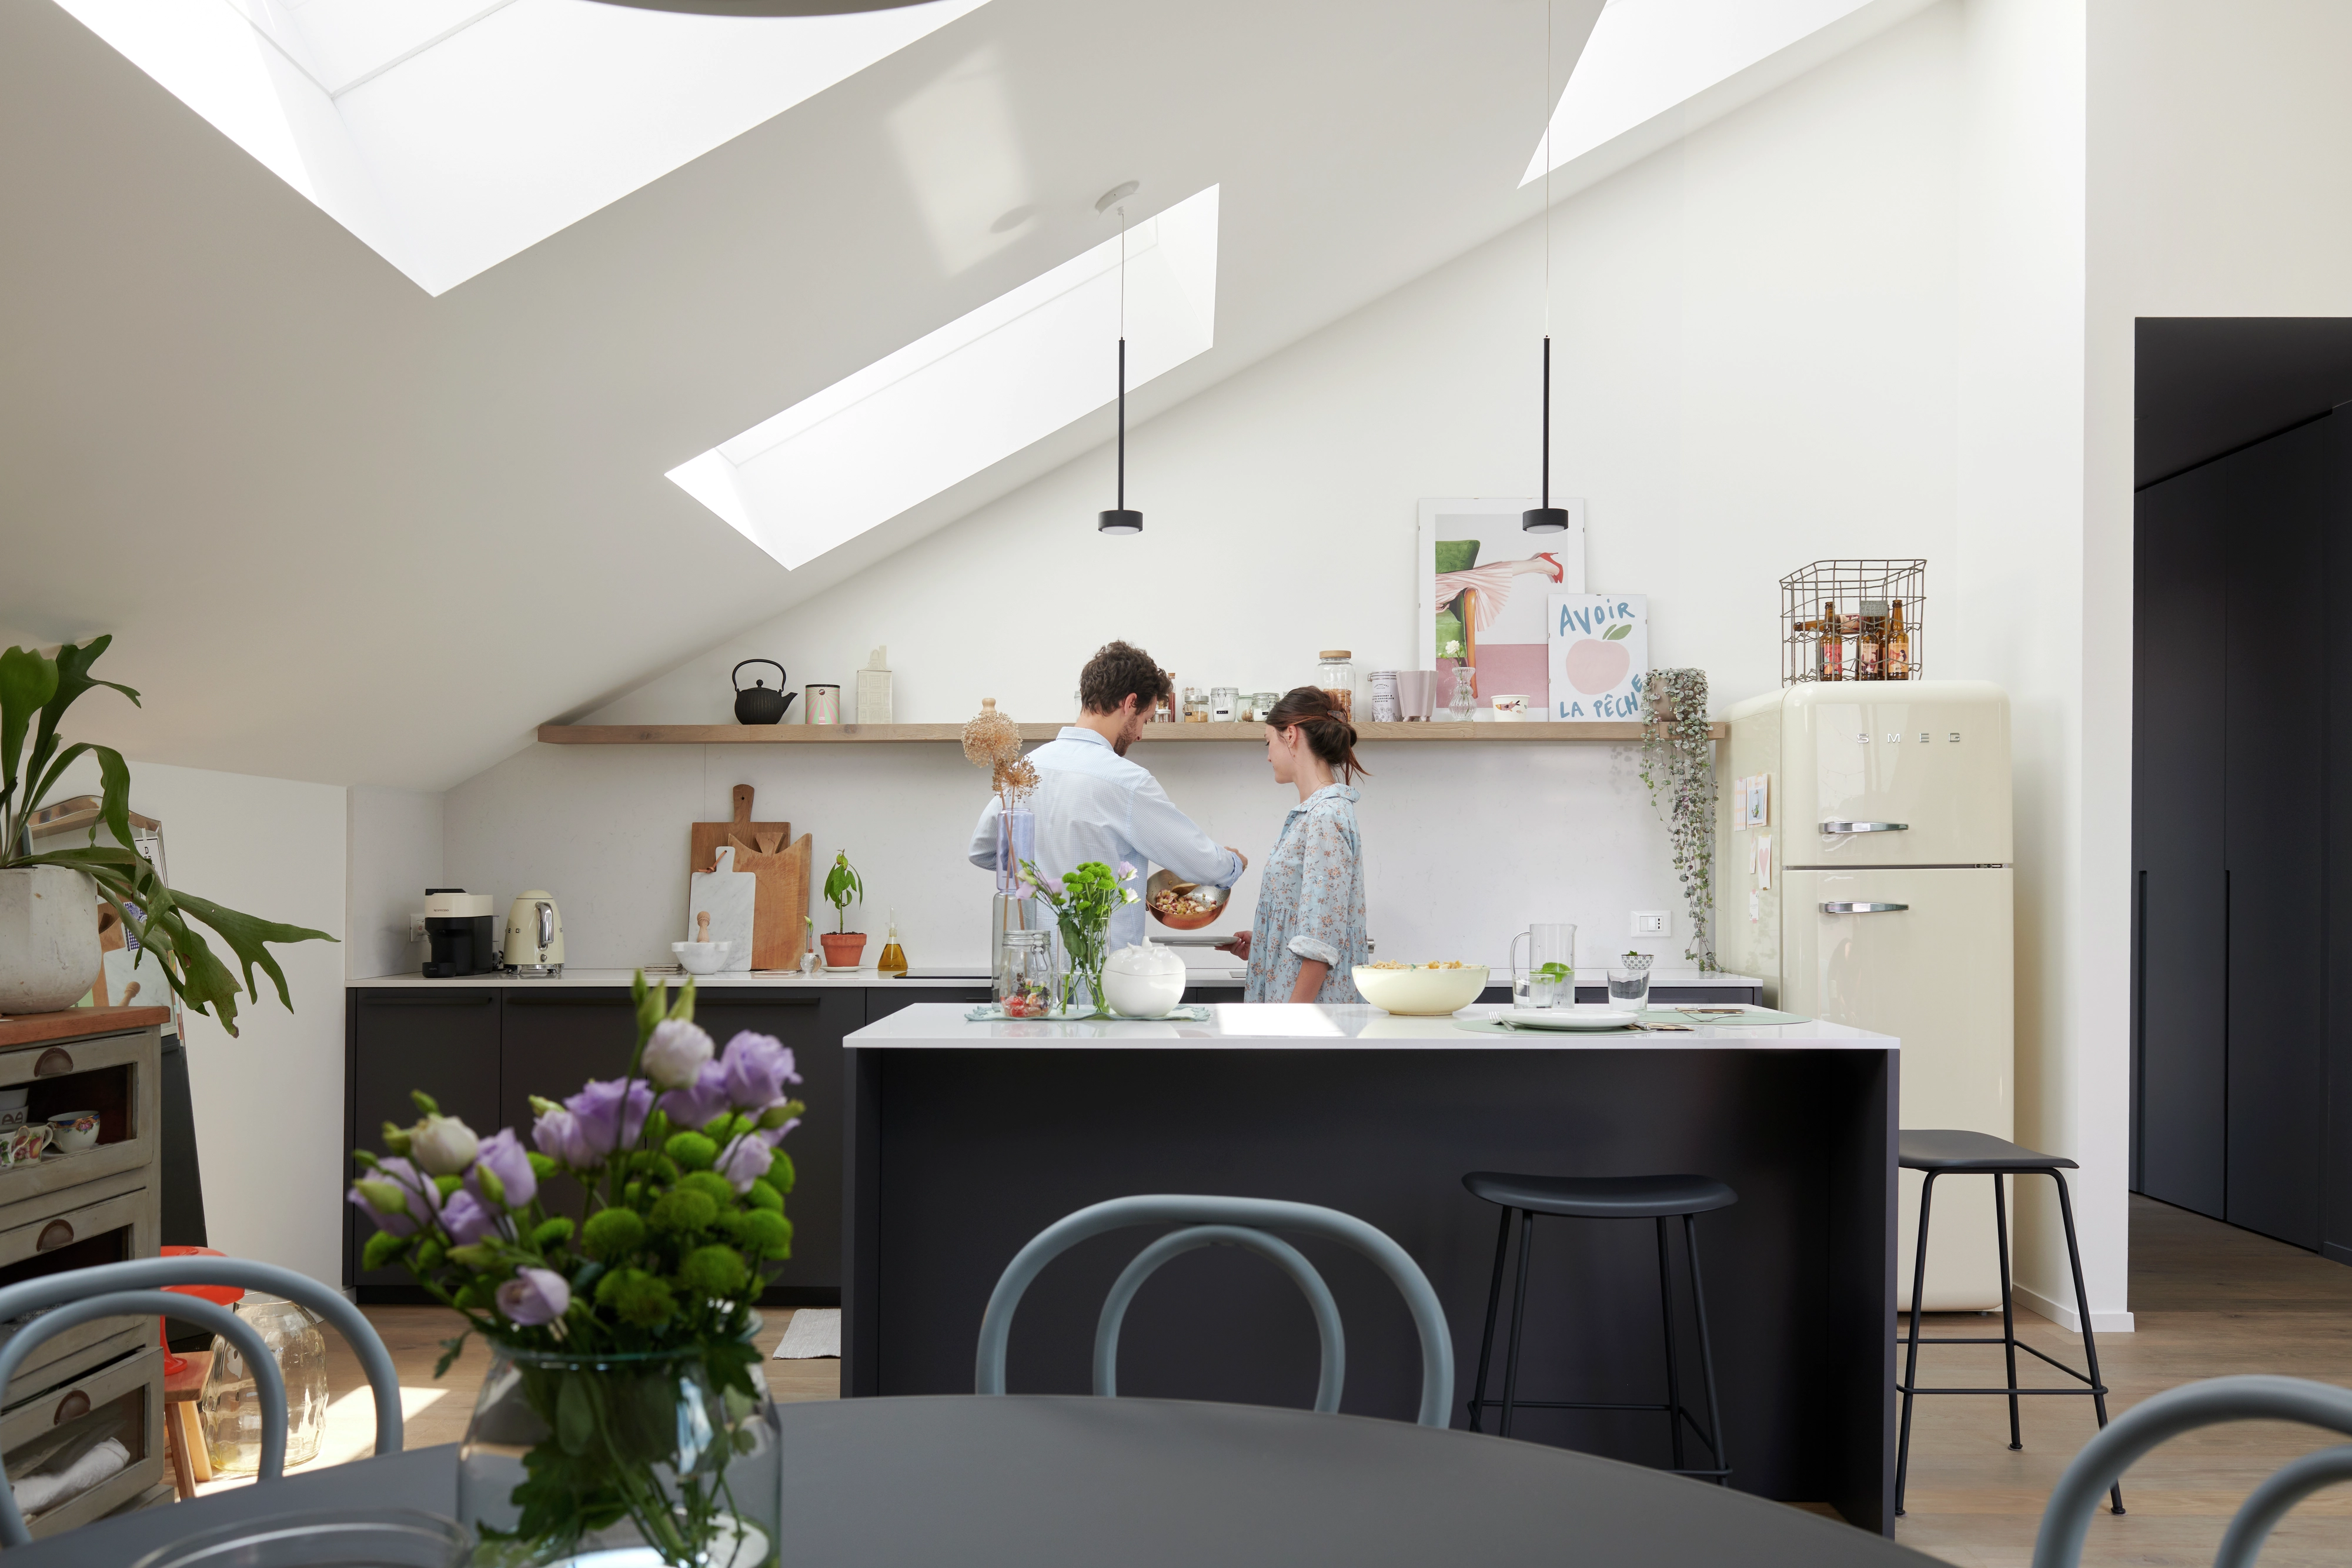 Cucina moderna e luminosa con finestre per tetti VELUX, mobili neri e un frigorifero vintage.